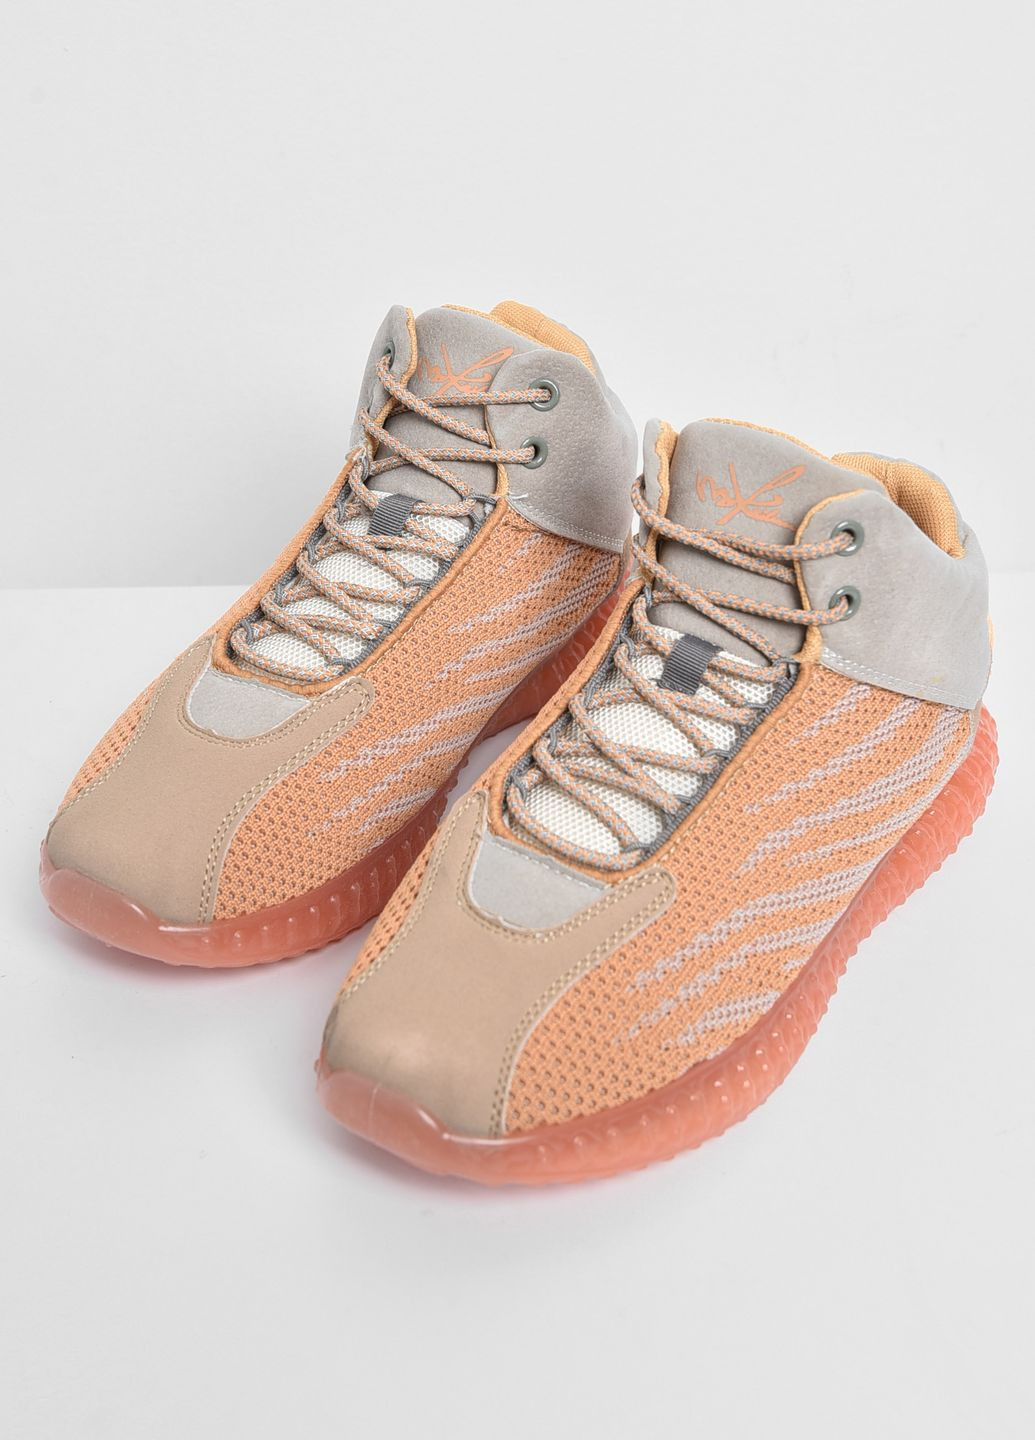 Оранжевые демисезонные кроссовки мужские оранжевого цвета на шнуровке текстиль Let's Shop